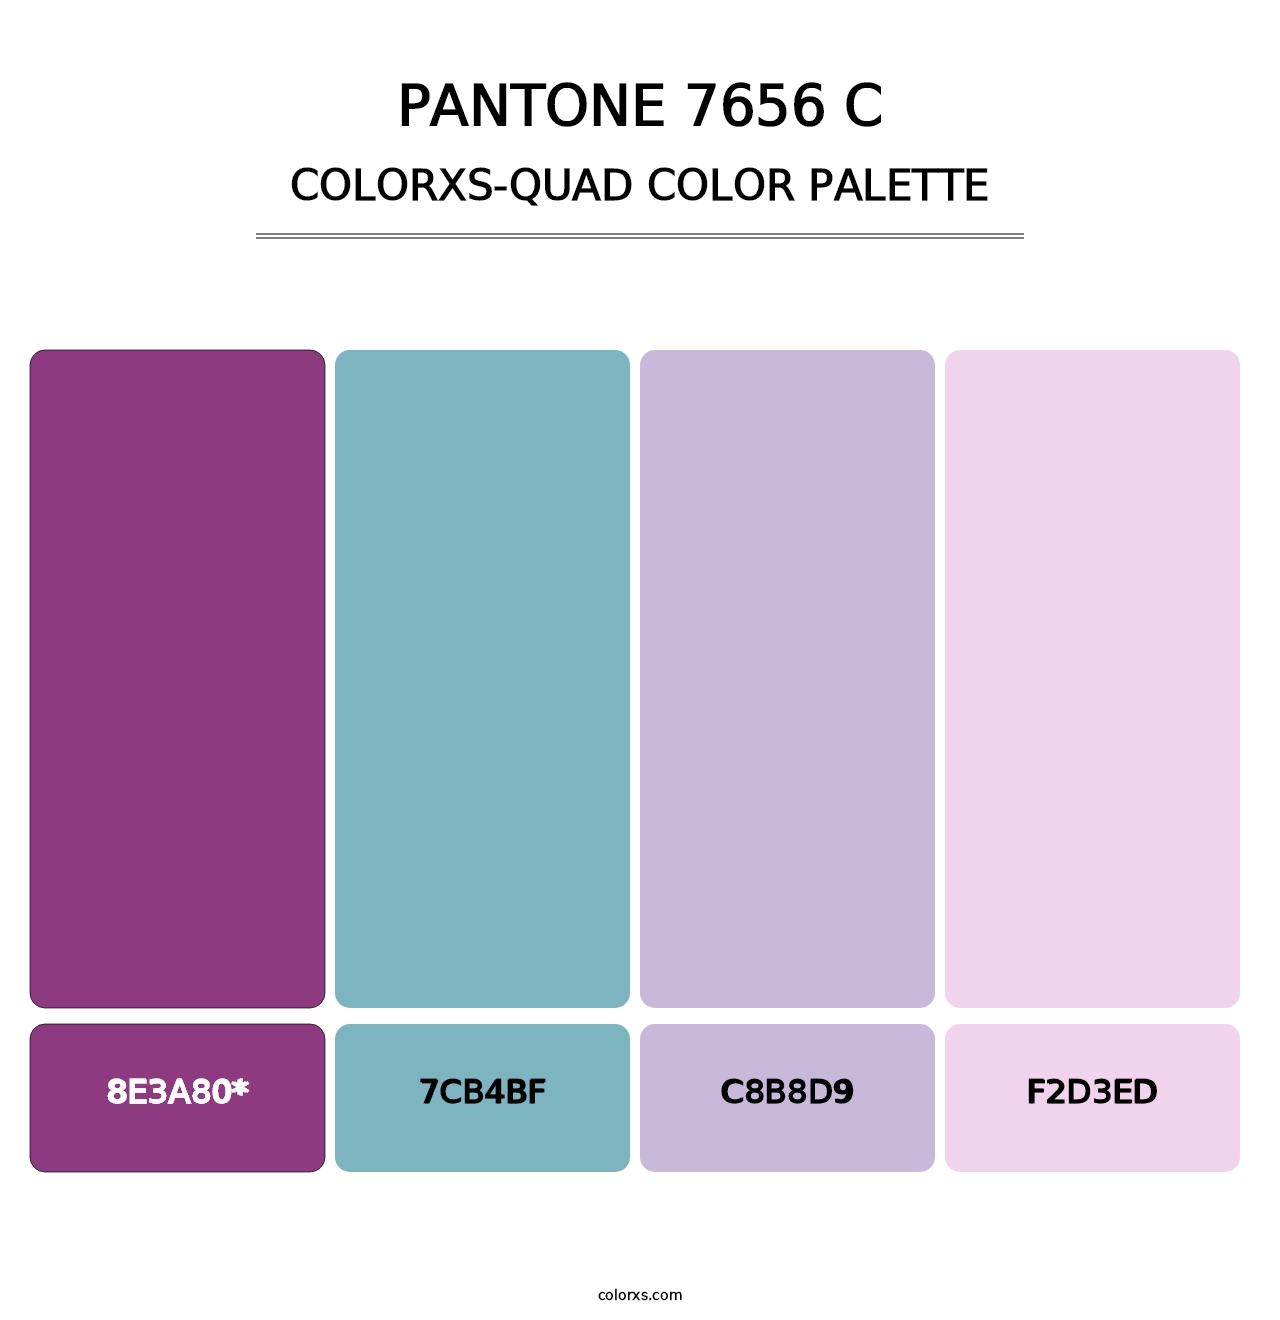 PANTONE 7656 C - Colorxs Quad Palette